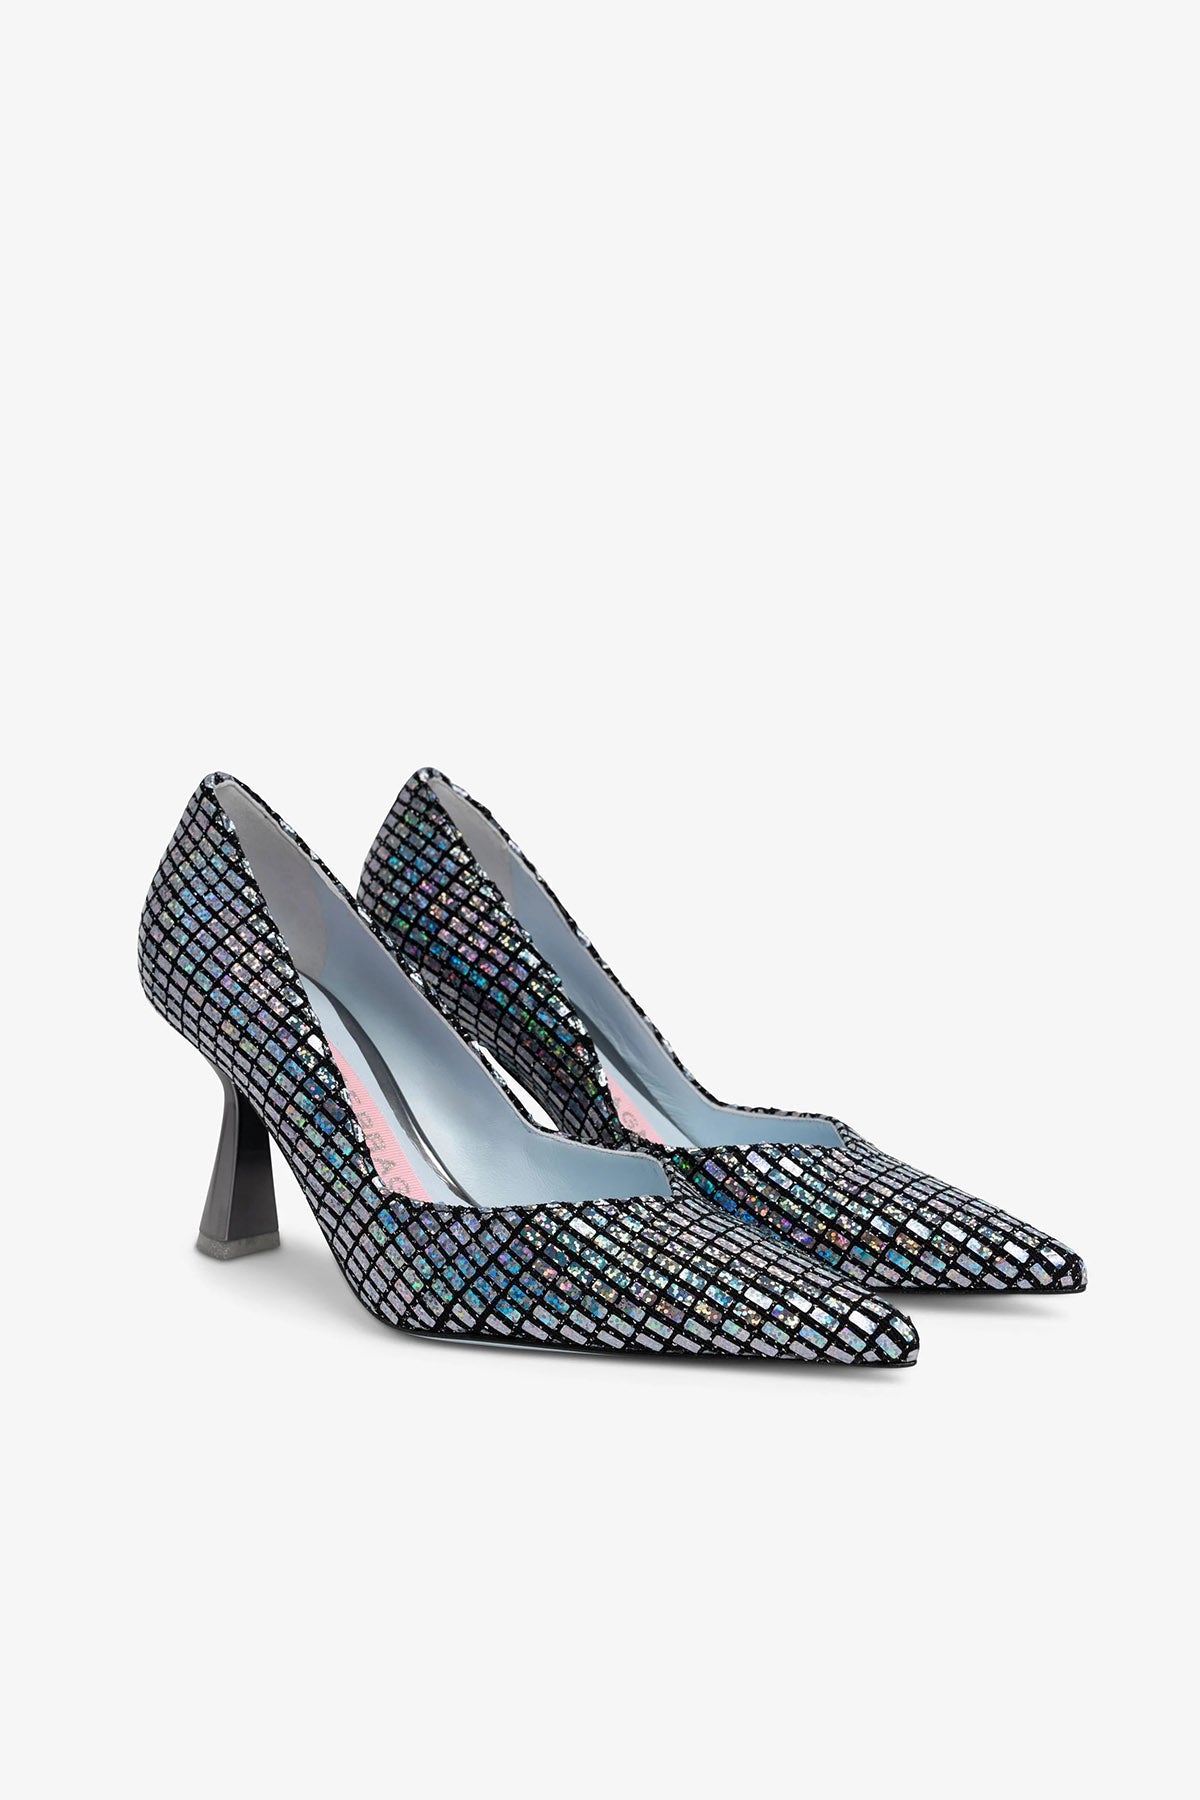 Chiara Ferragni Metalik Stiletto Ayakkabı